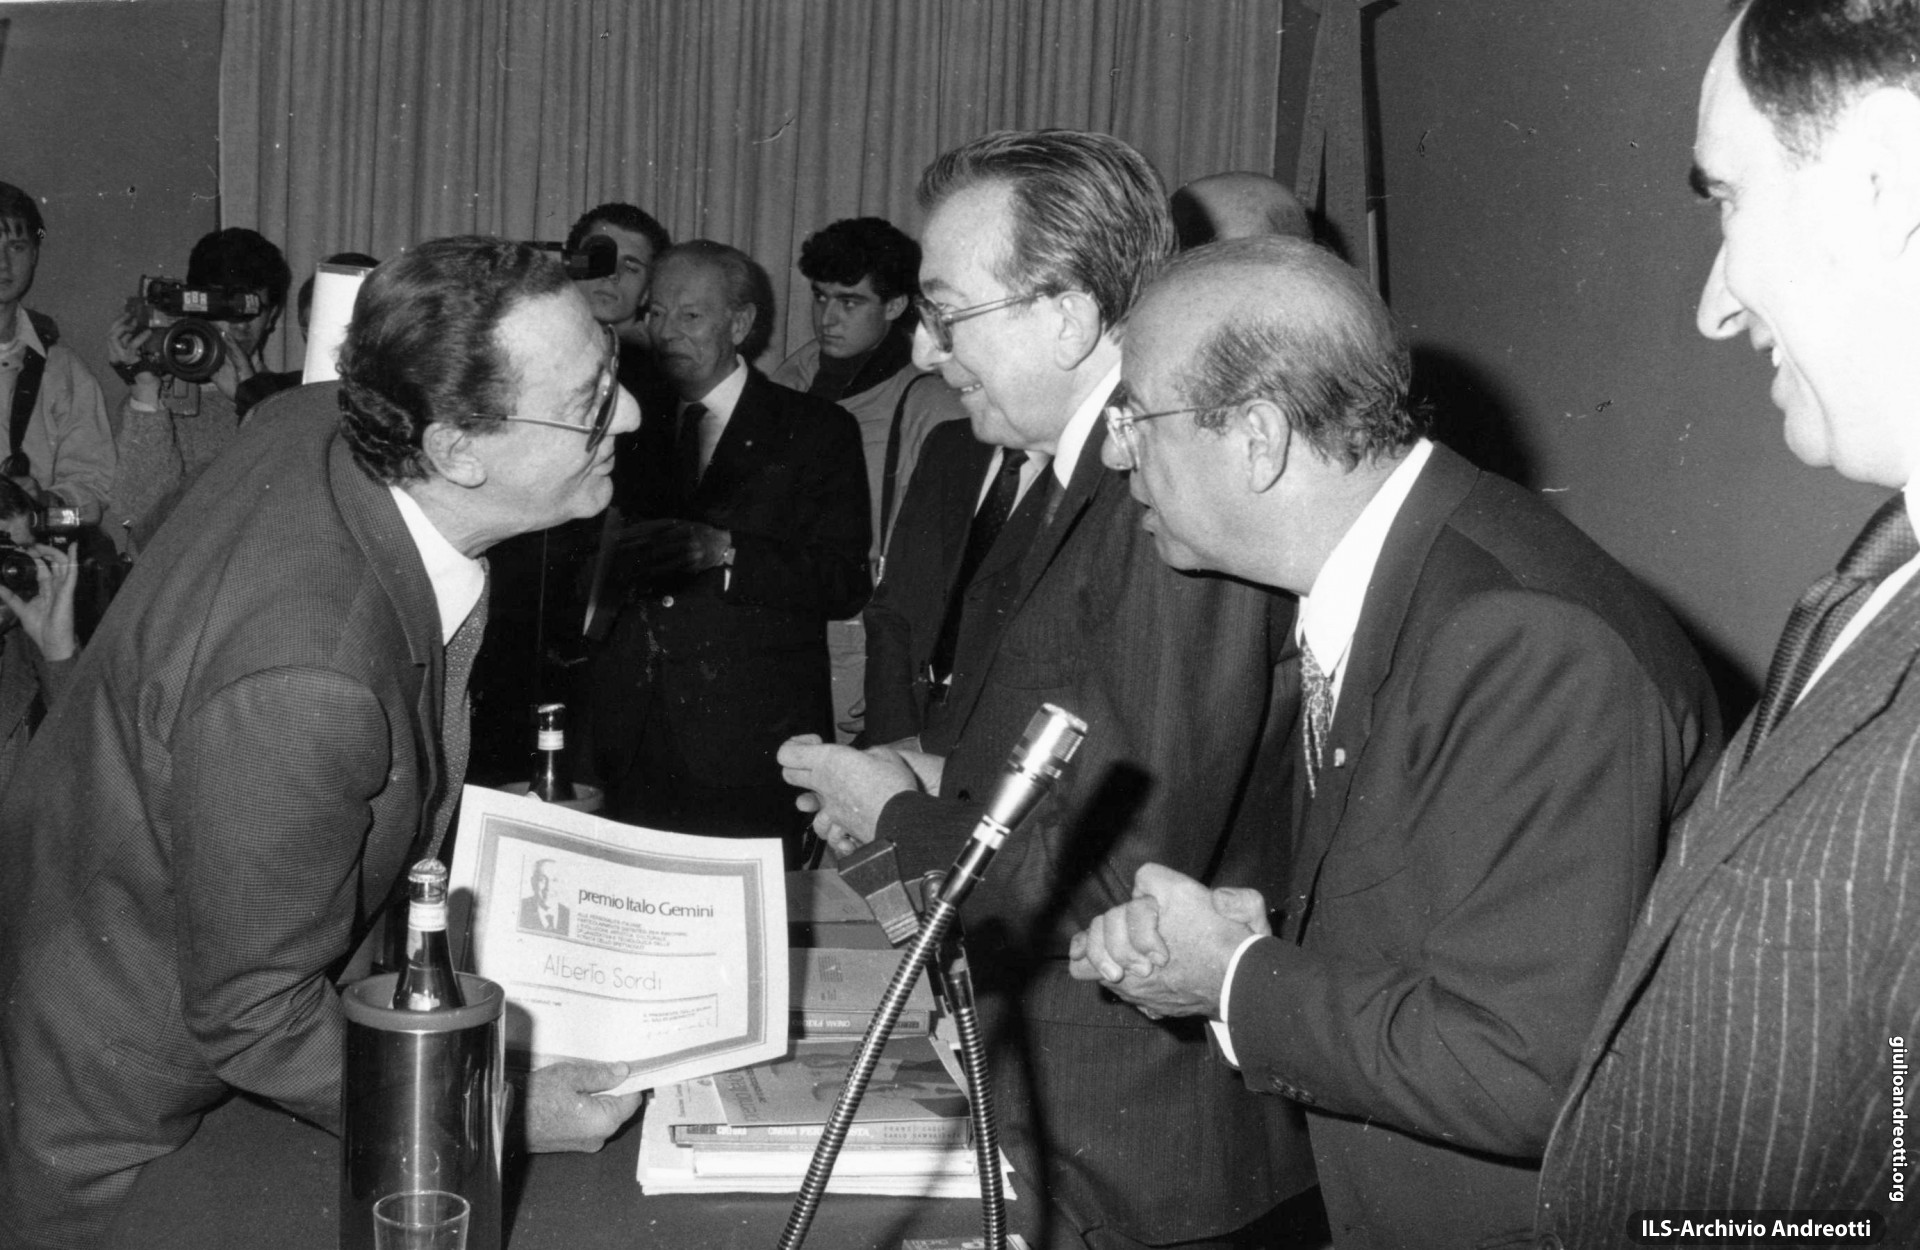 Gennaio 1989. Alberto Sordi riceve da Giulio Andreotti, Presidente del Consiglio, e da Paolo Bruno, Presidente dell’Agis, il Premio cinematografico “Italo Gemini” 